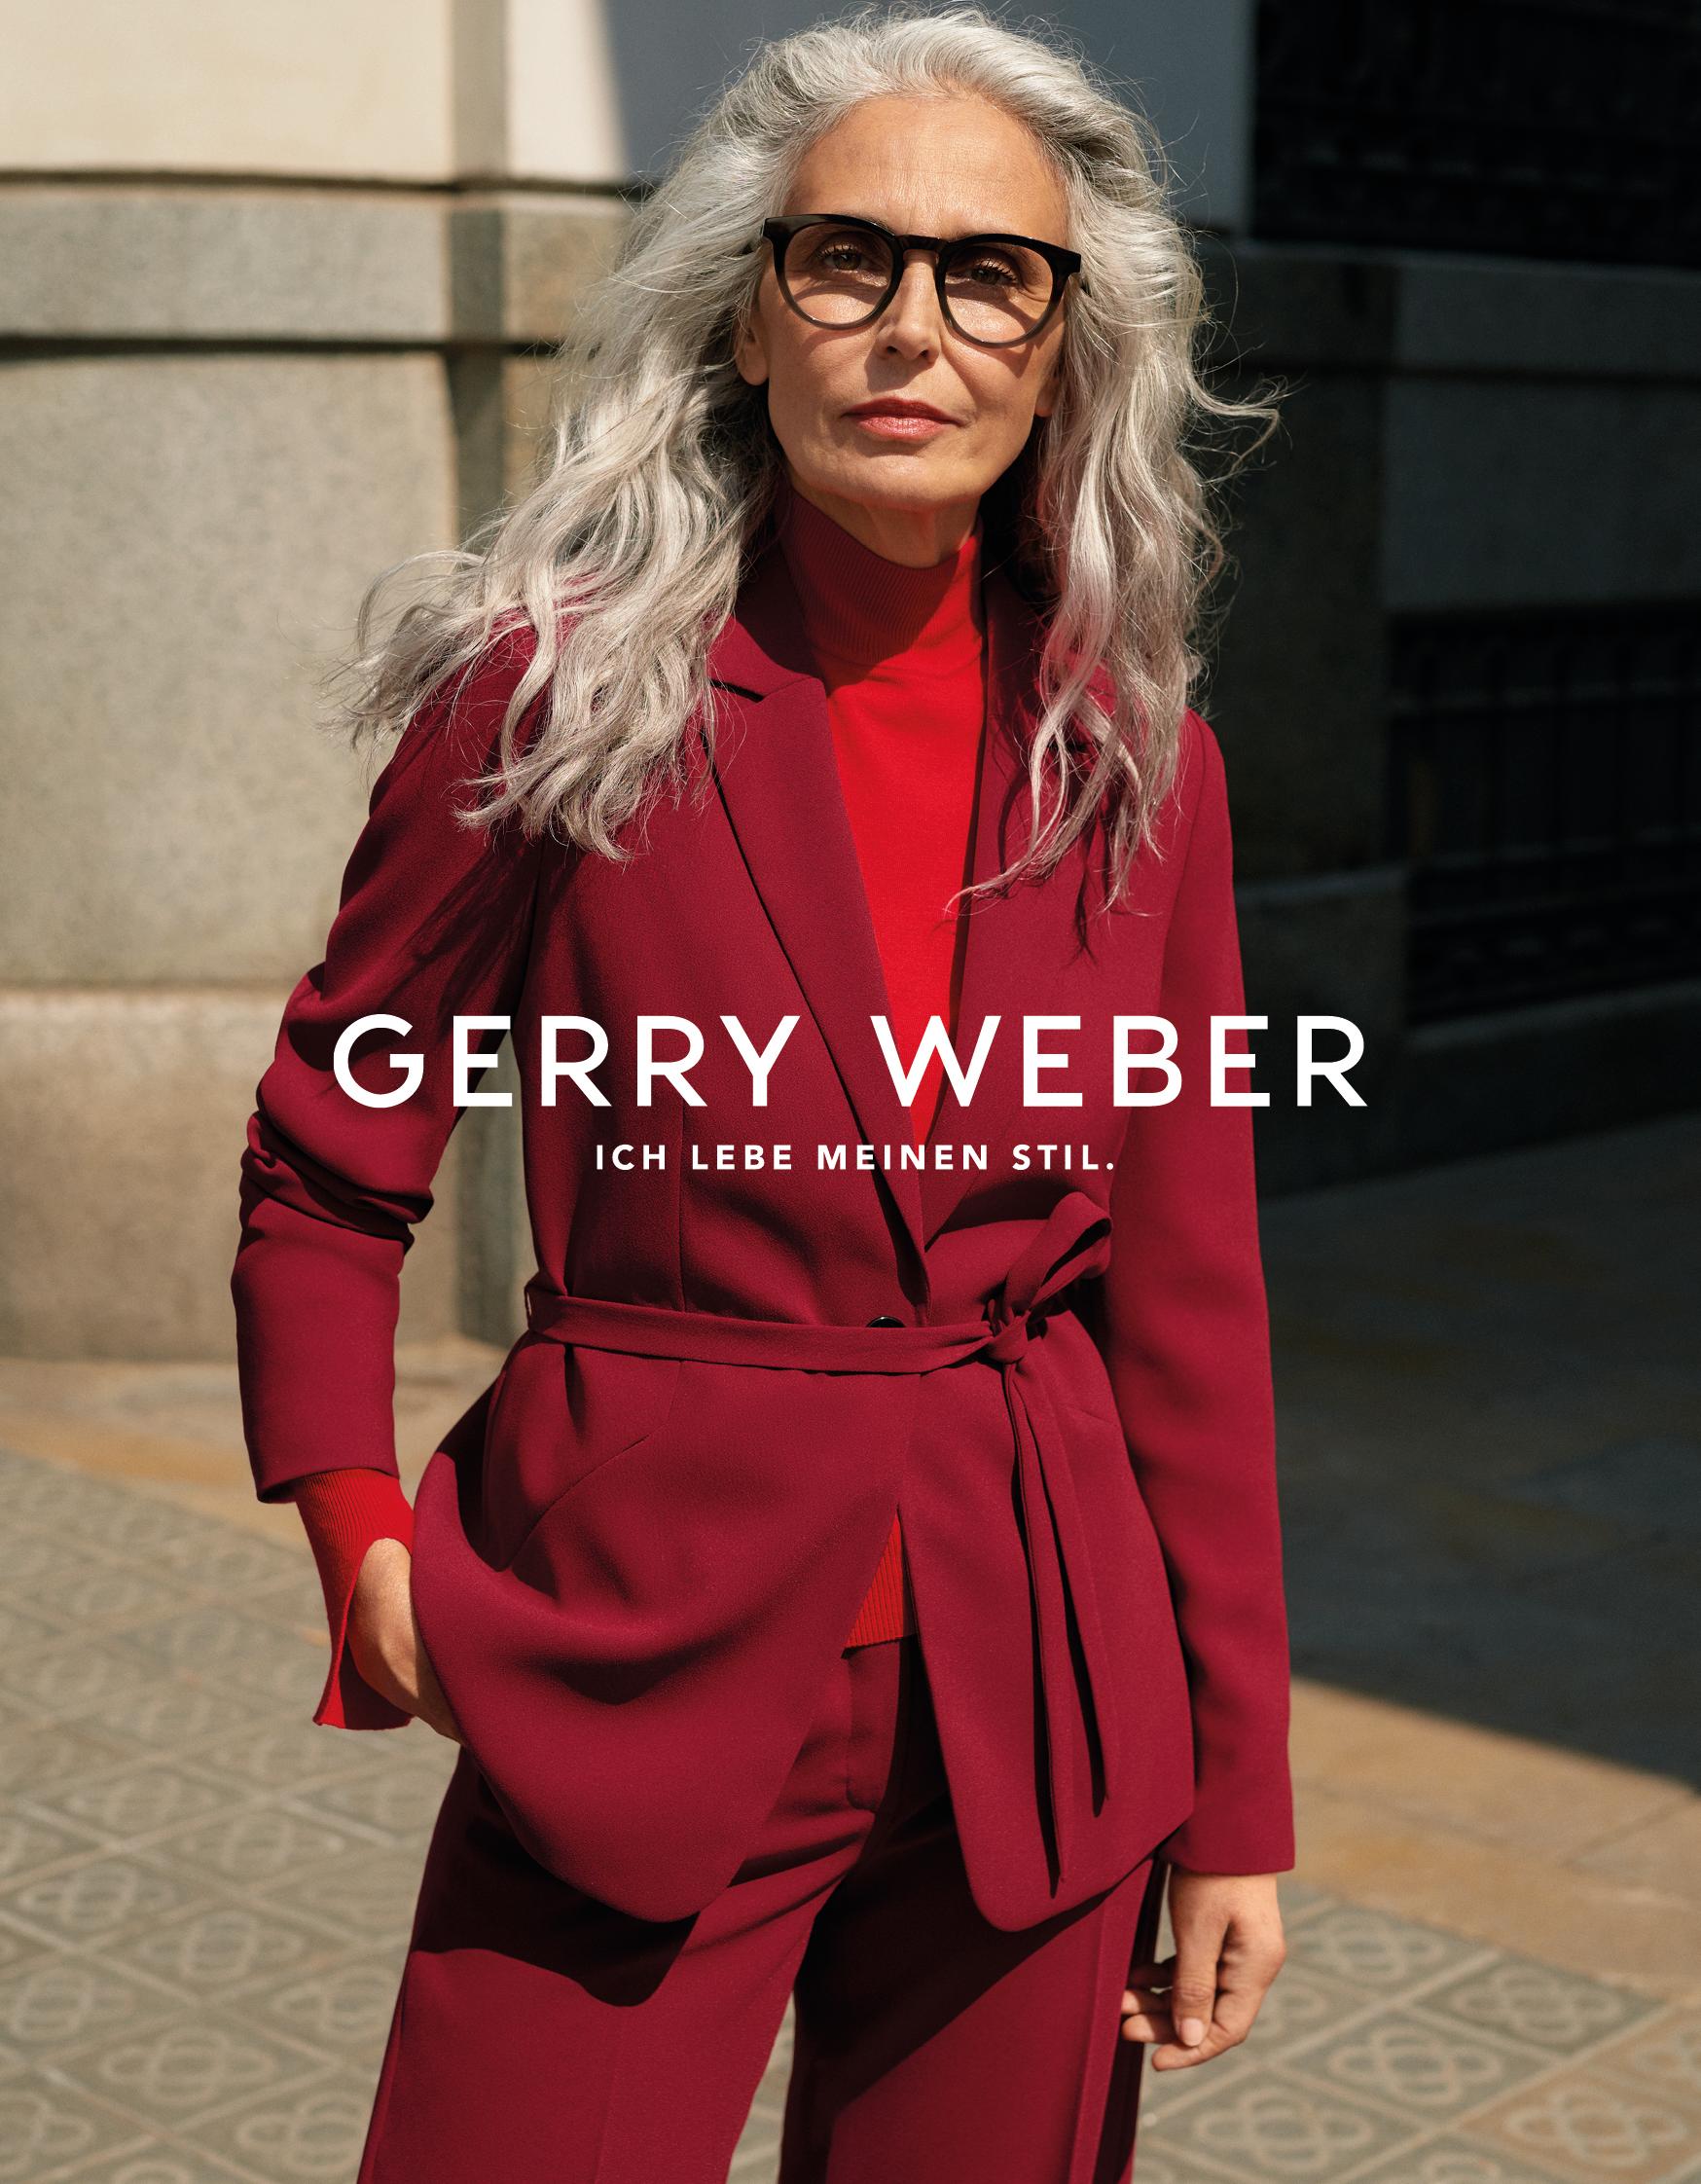 GERRY WEBER erstmalig mit Best-Ager-Model und startet optimistisch mit breit ... | Presseportal